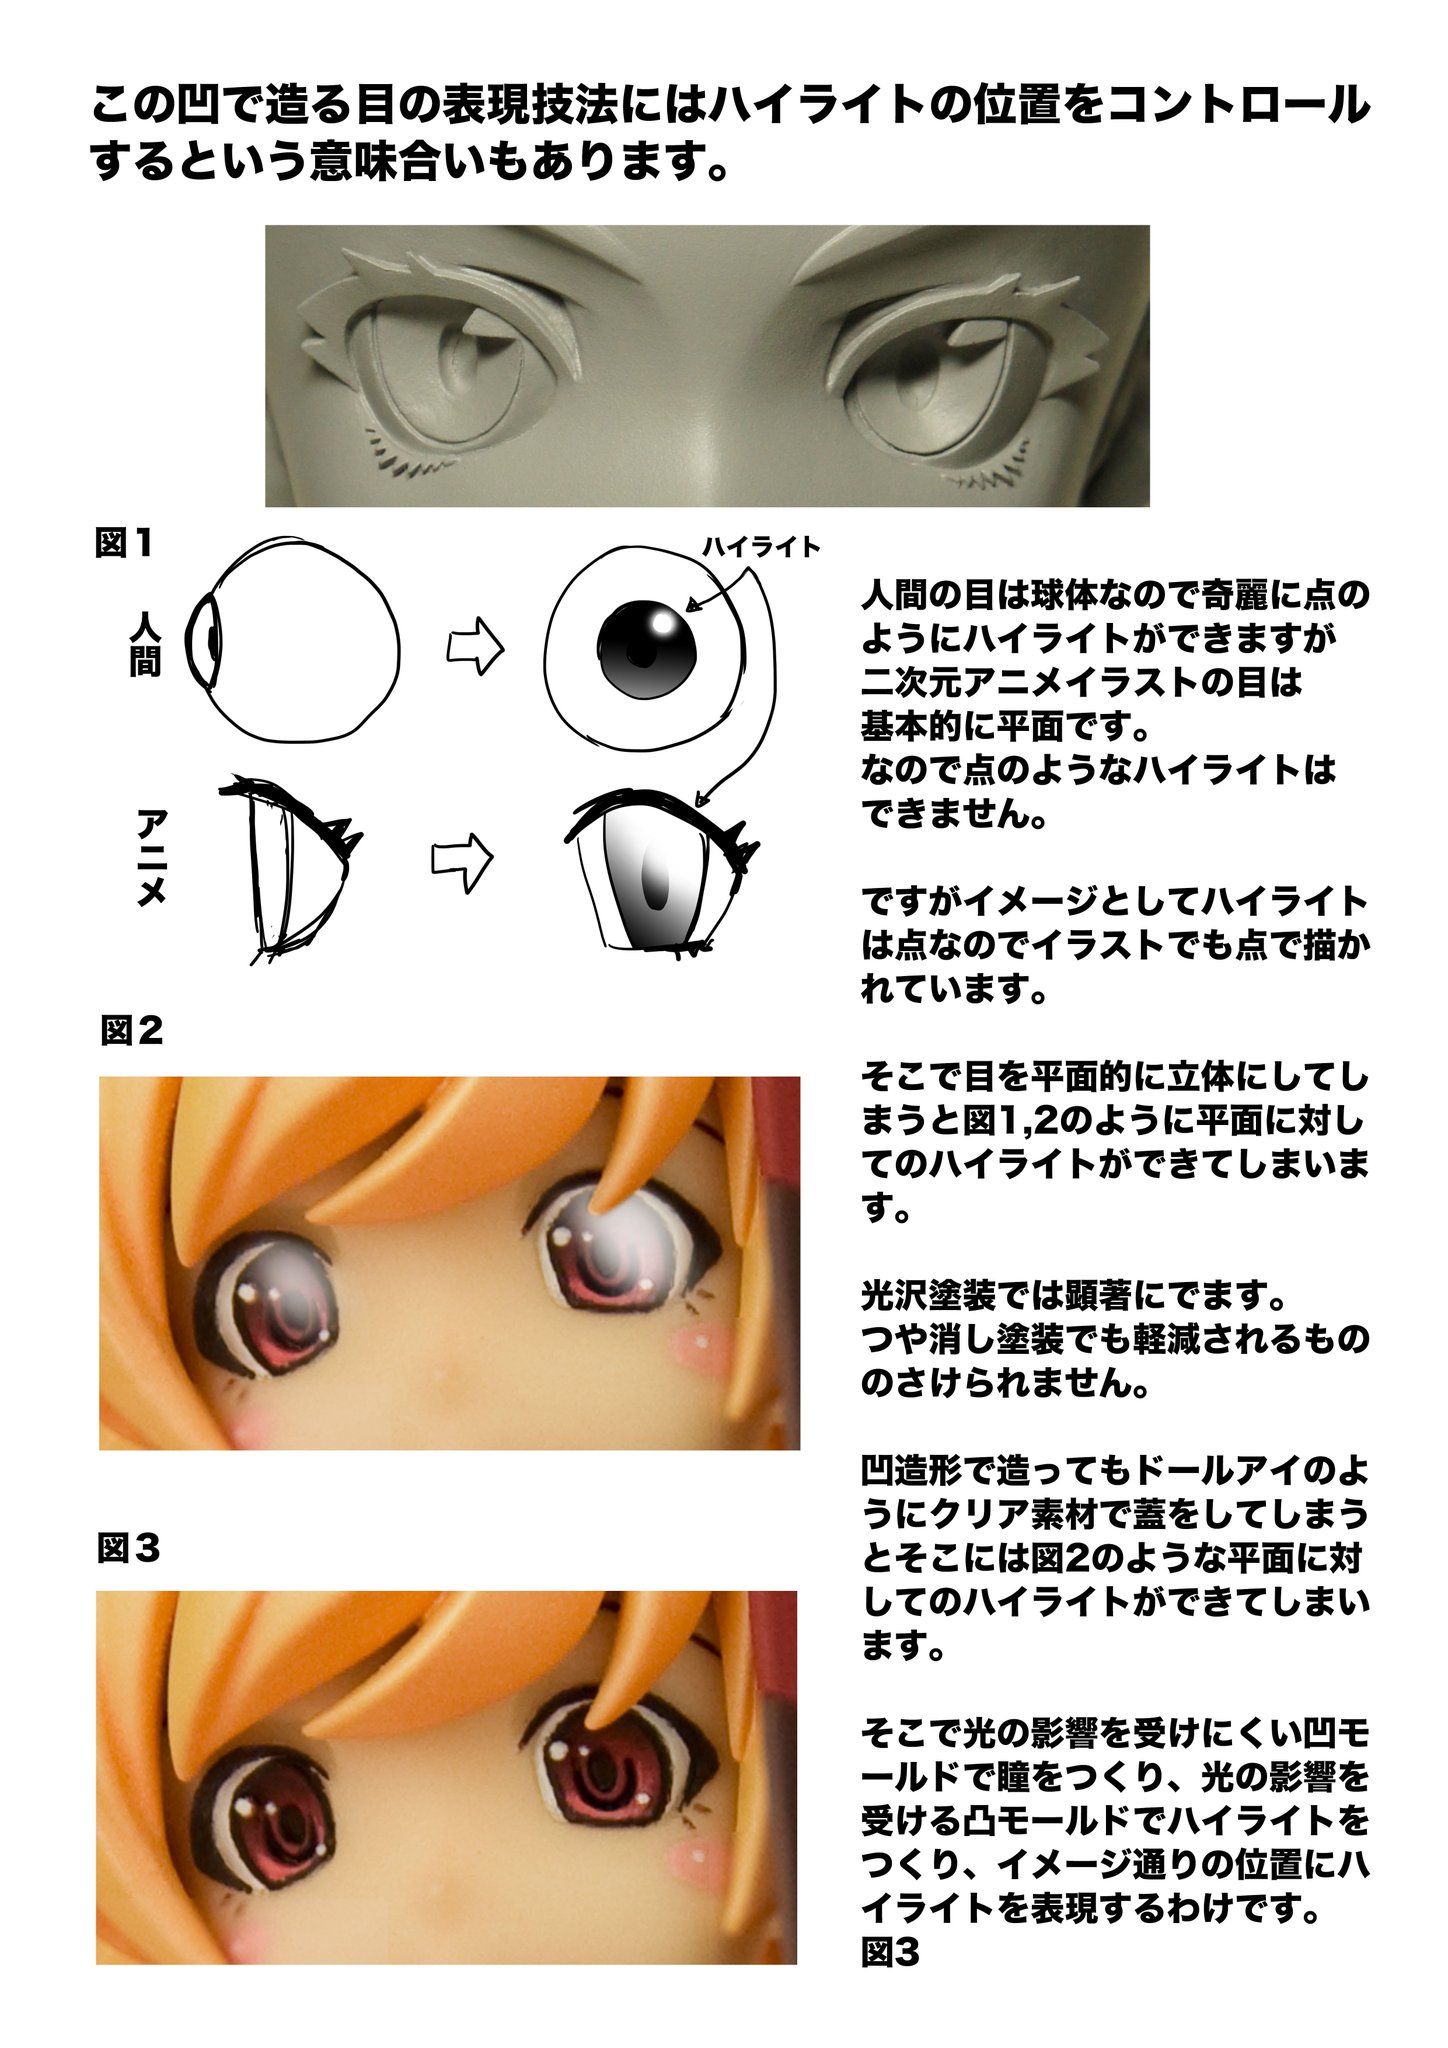 榎木ともひでwf4 14 02 この凹で造る目の表現技法にはハイライトの位置をコントロールするという意味合いもあります